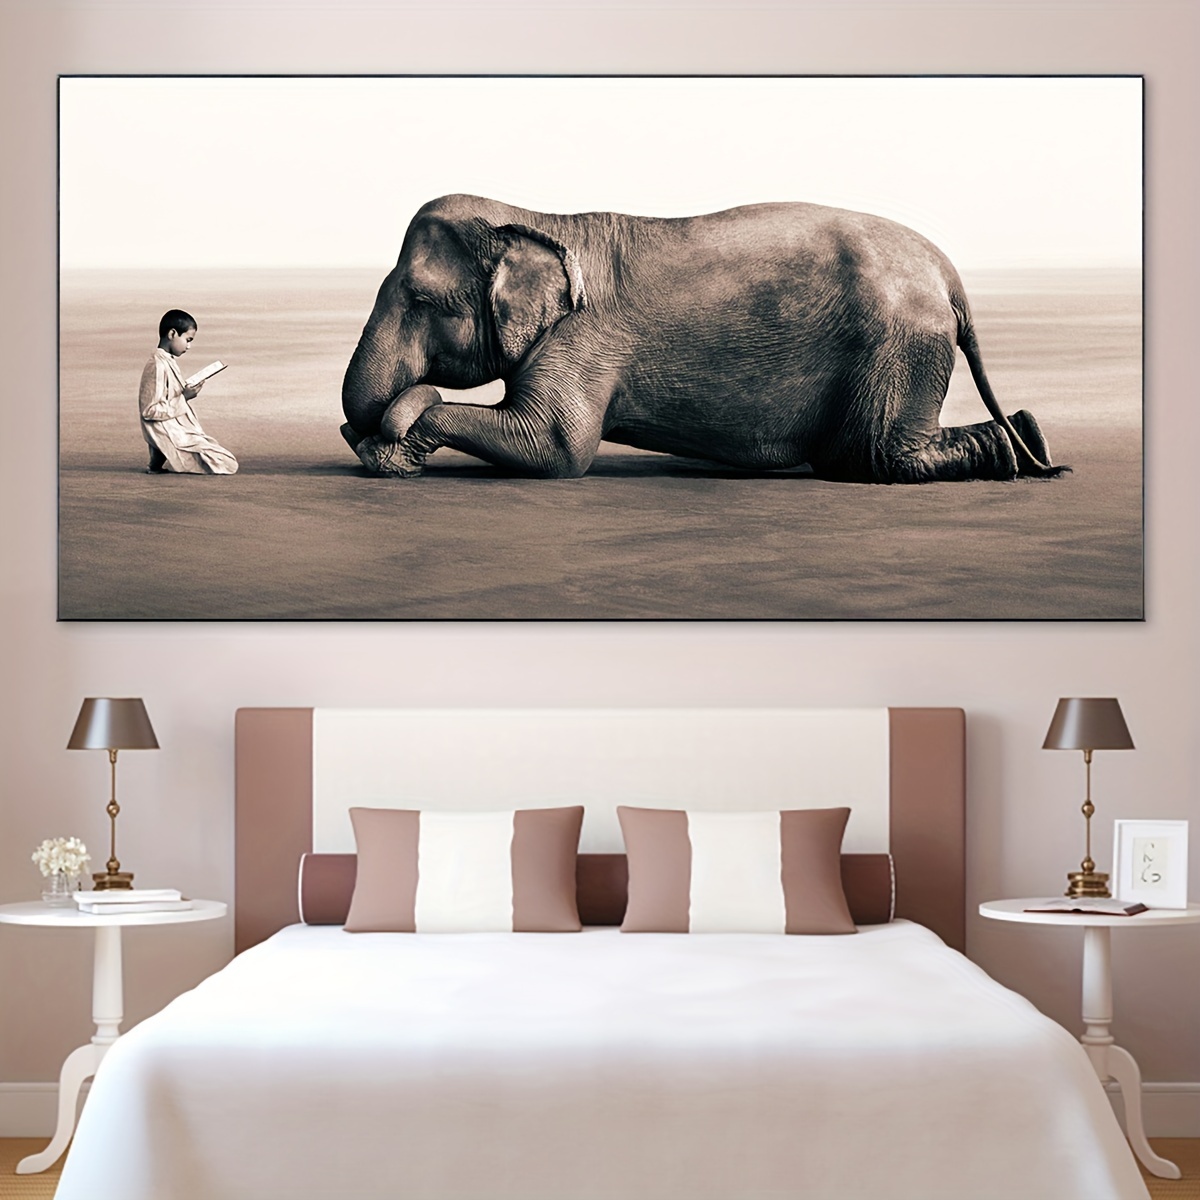 Comprar Elefante africano rebaño vida salvaje decoración lienzo pintura  fondo del hogar pintura de pared arte Cuadros decoración salón grande